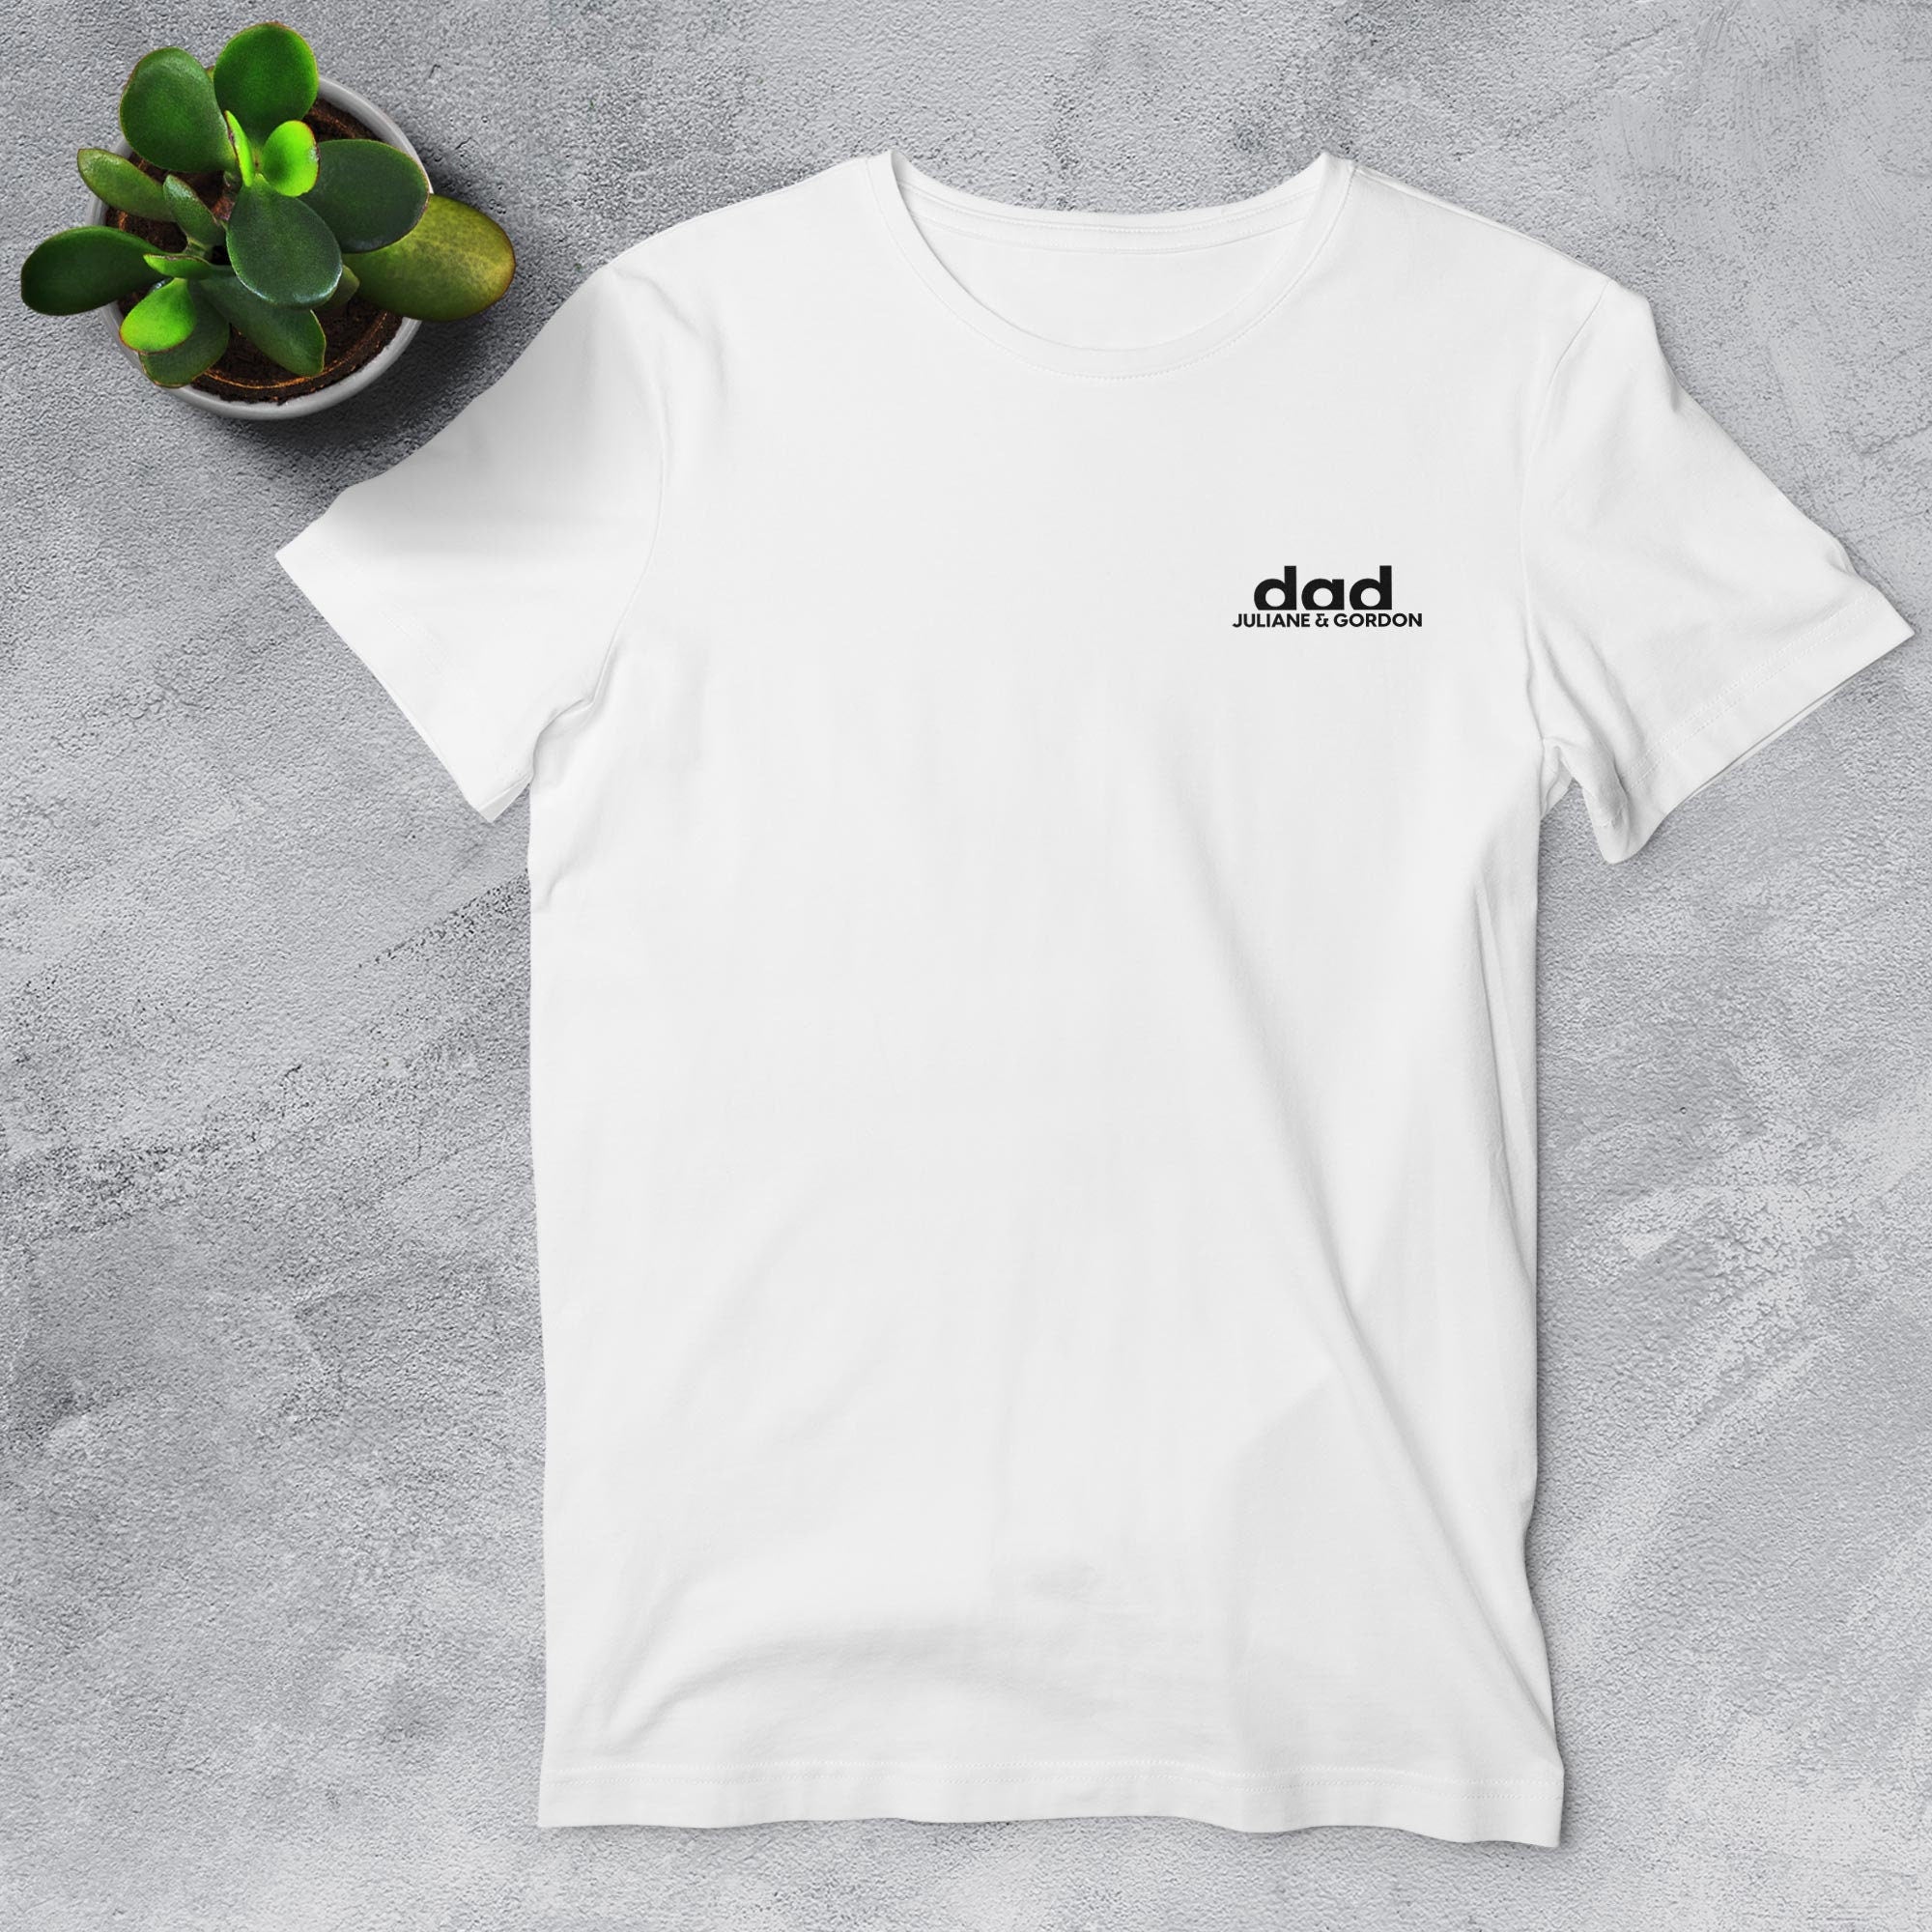 Dad T-Shirt weiß schwarz, personalisiert mit Namen